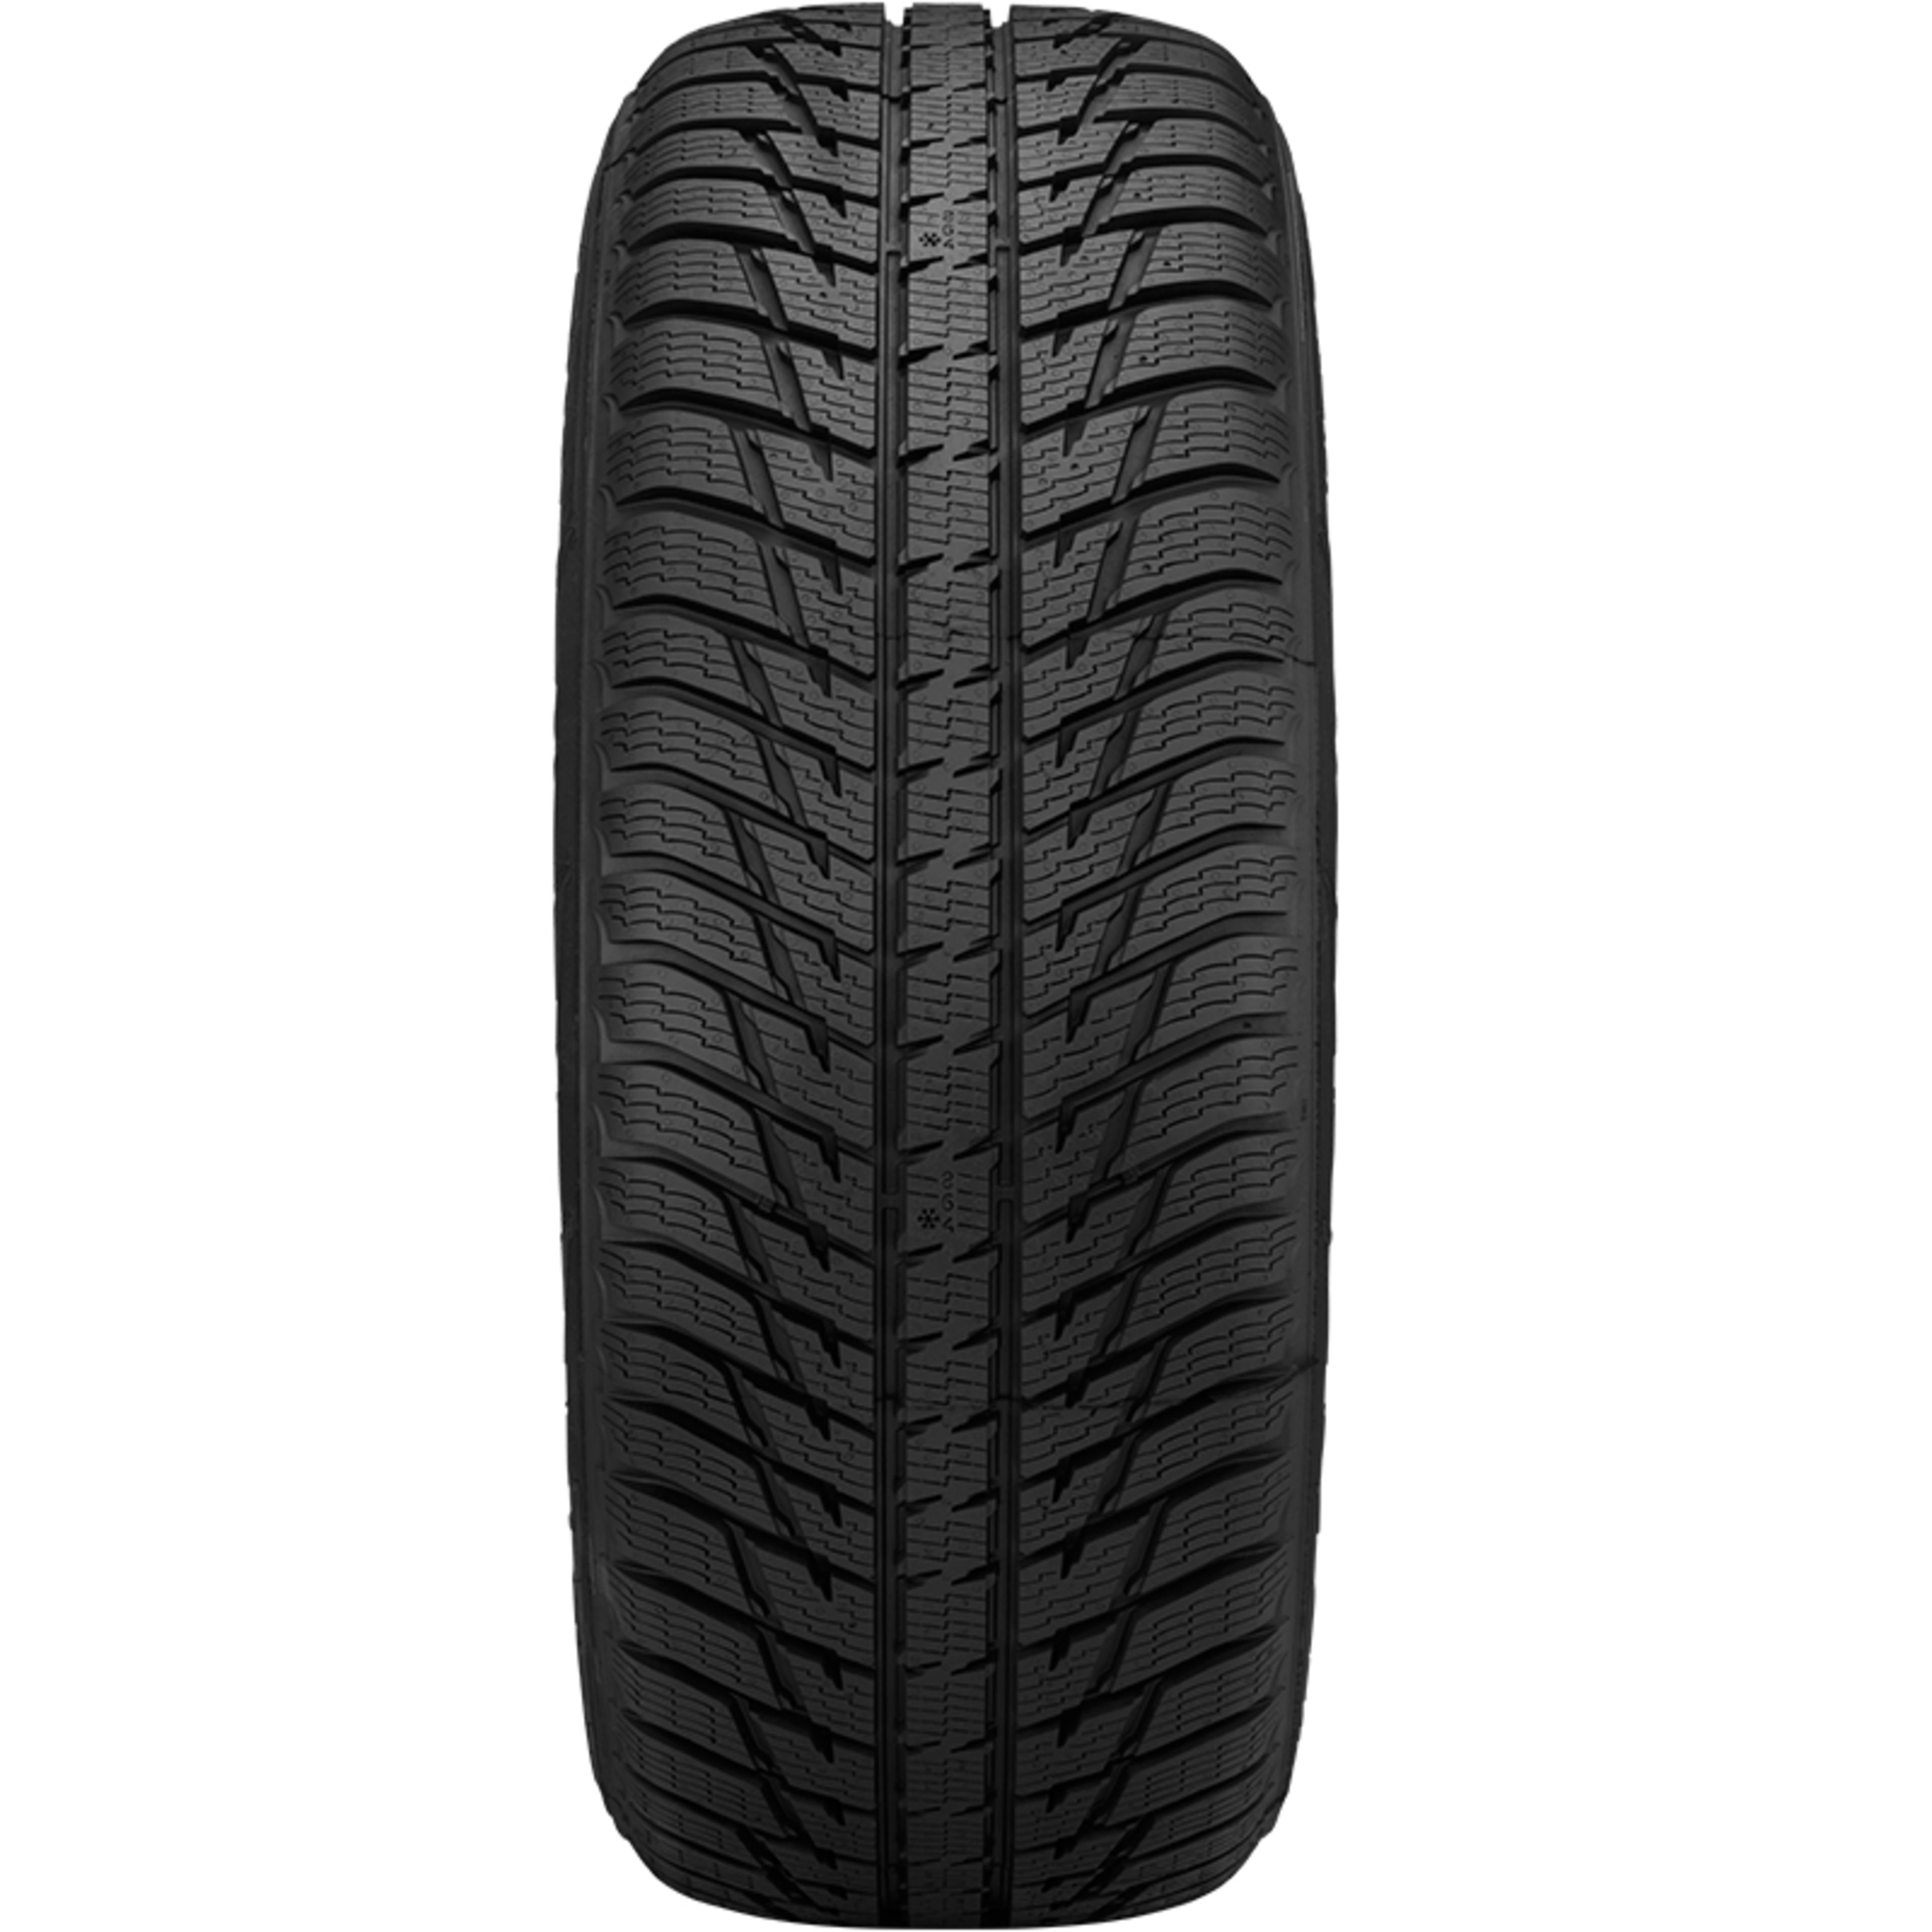 Nokian SUV Buy Tires Online WRG3 SimpleTire |